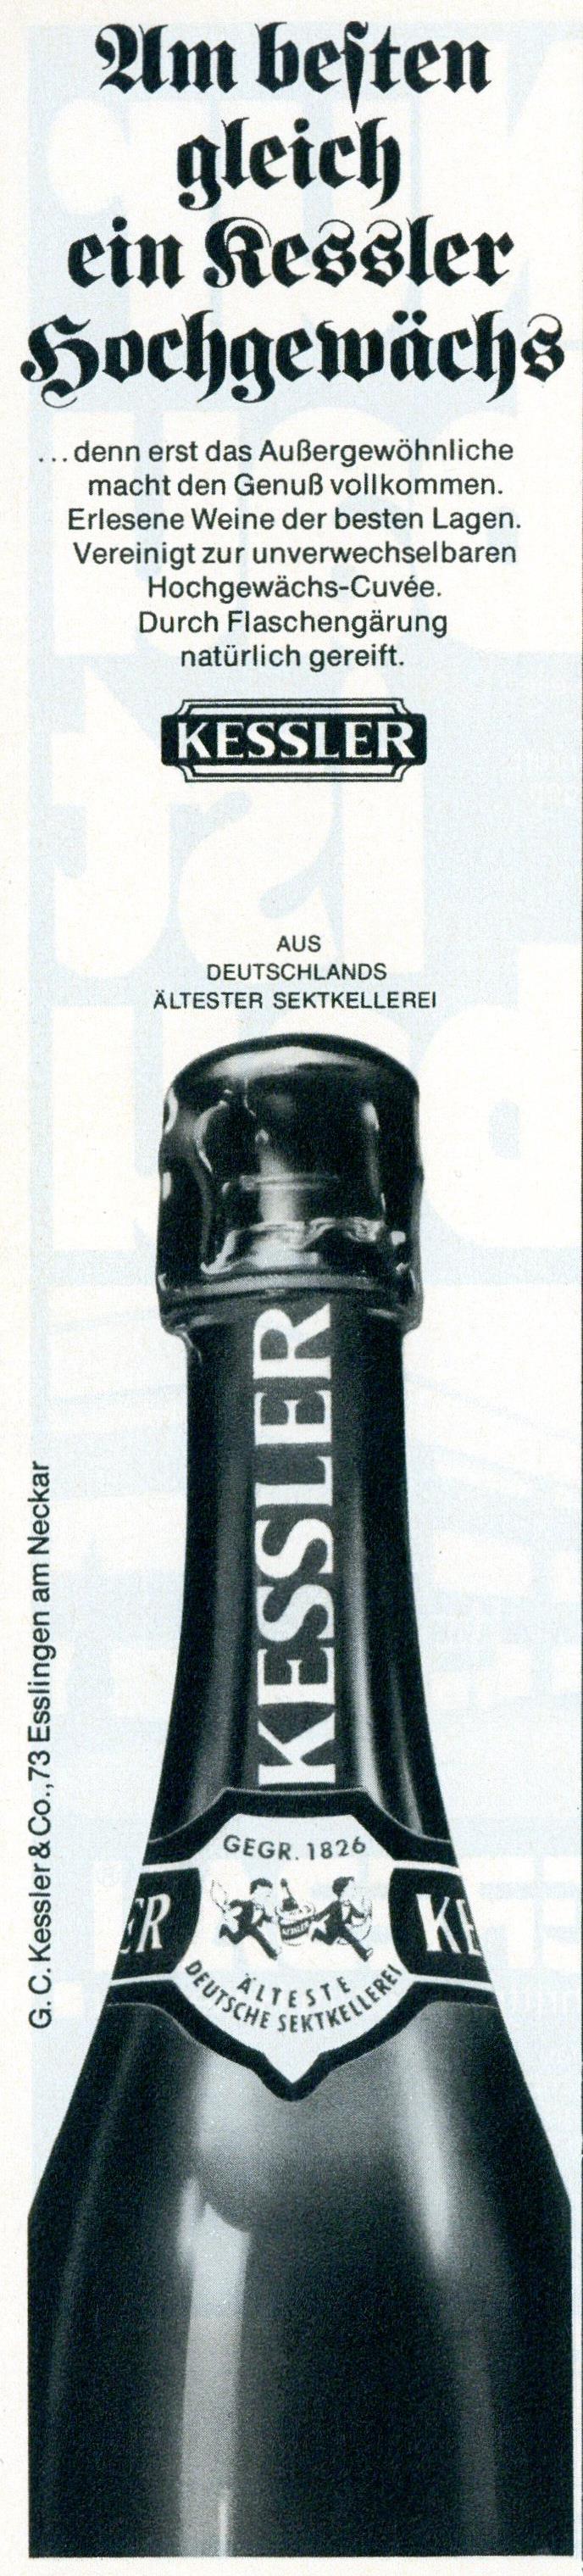 Kessler 1975 0.jpg